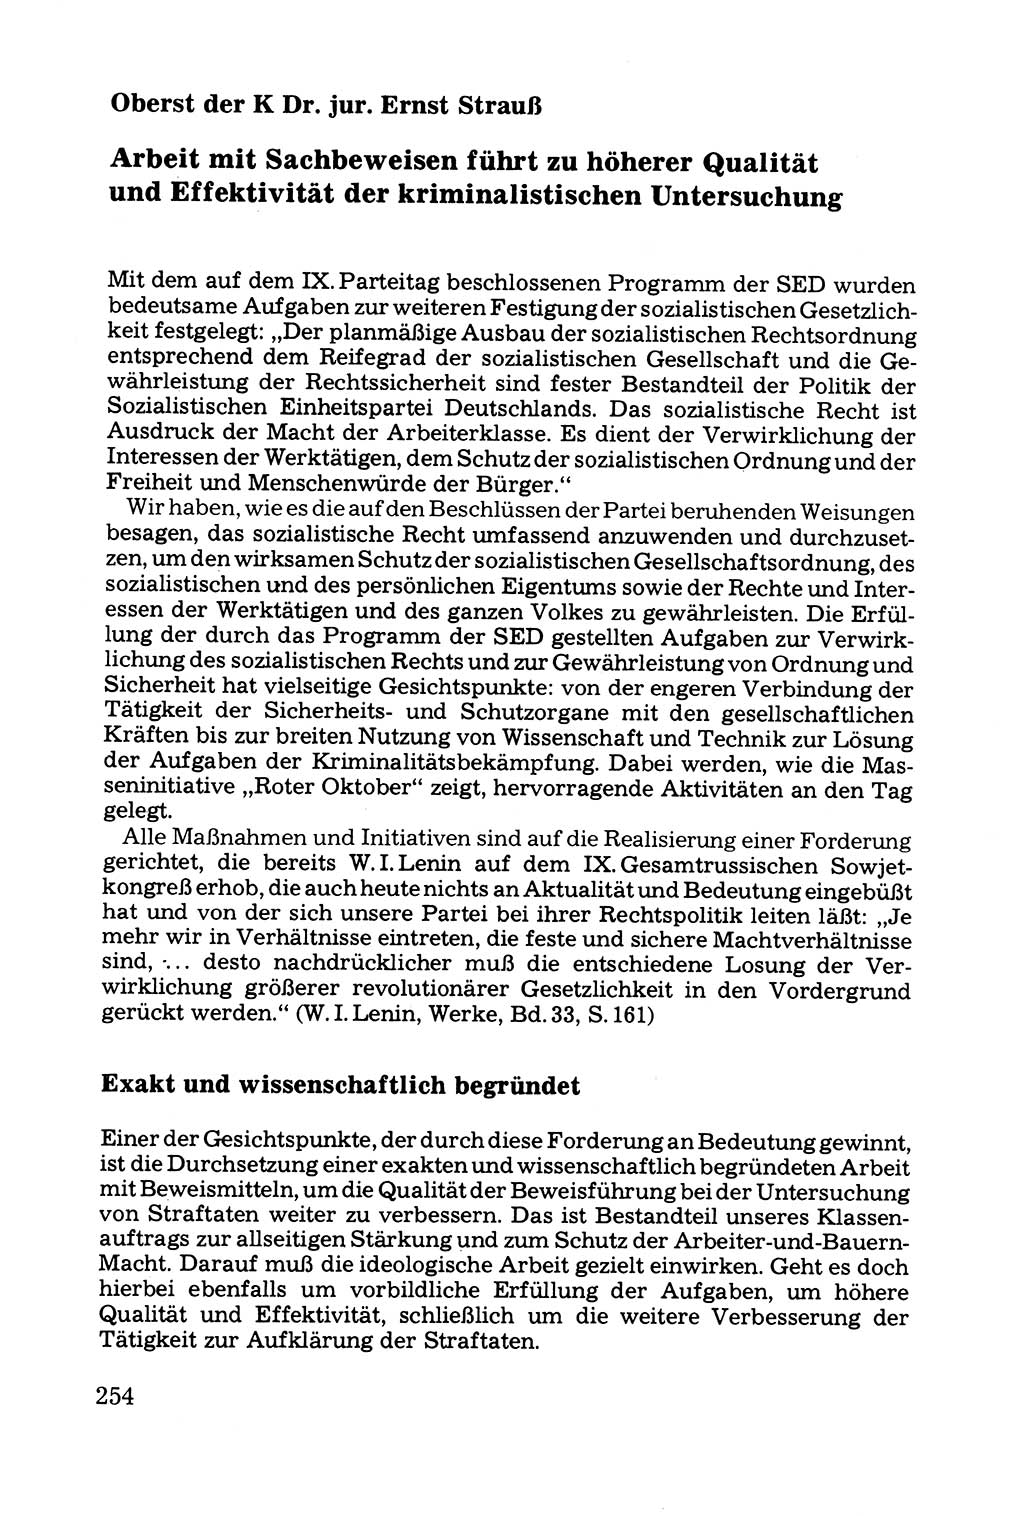 Grundfragen der Beweisführung im Ermittlungsverfahren [Deutsche Demokratische Republik (DDR)] 1980, Seite 254 (Bws.-Fhrg. EV DDR 1980, S. 254)